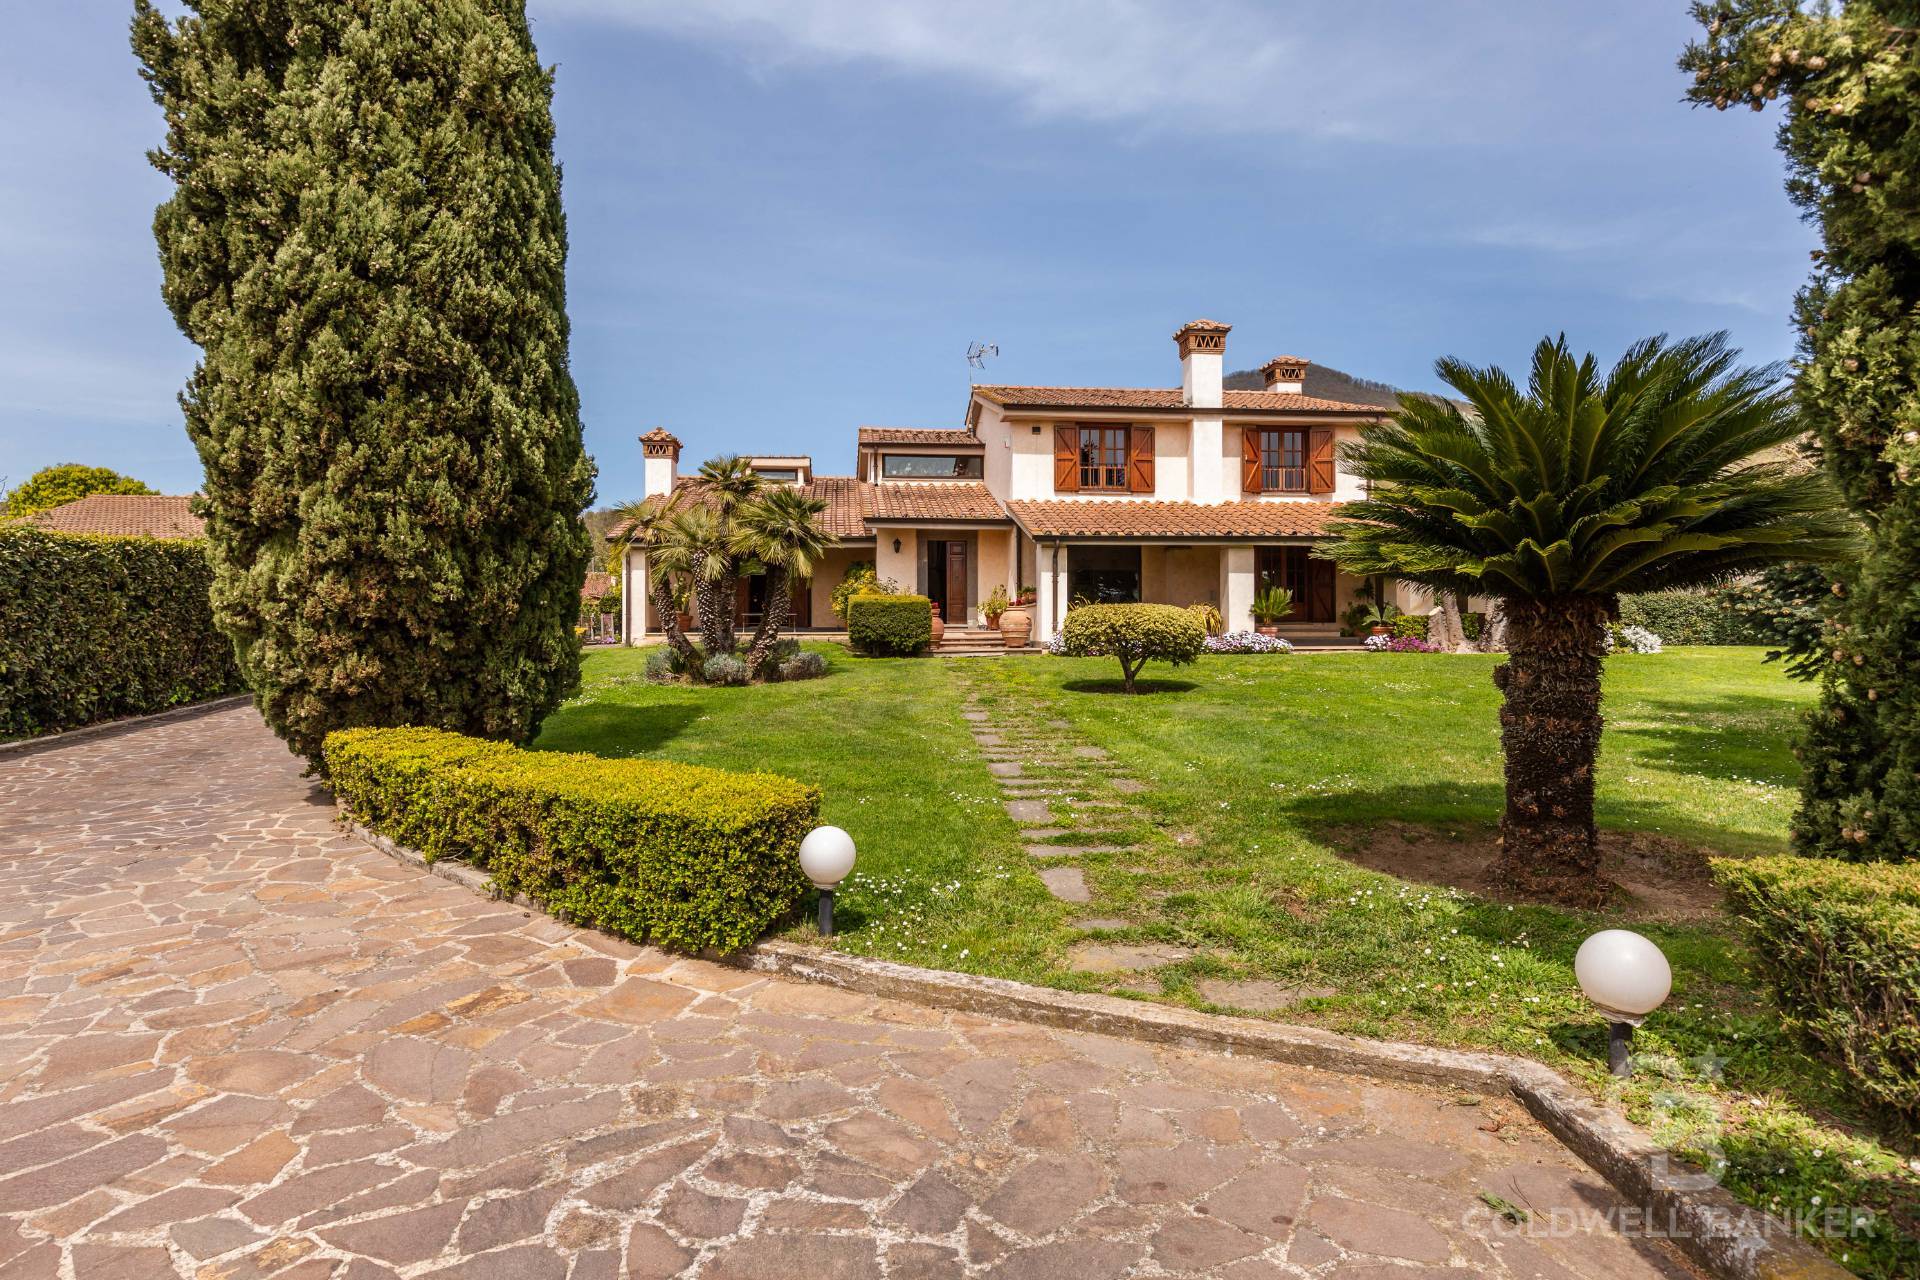 Villa in vendita a Trevignano Romano, 14 locali, prezzo € 880.000 | CambioCasa.it